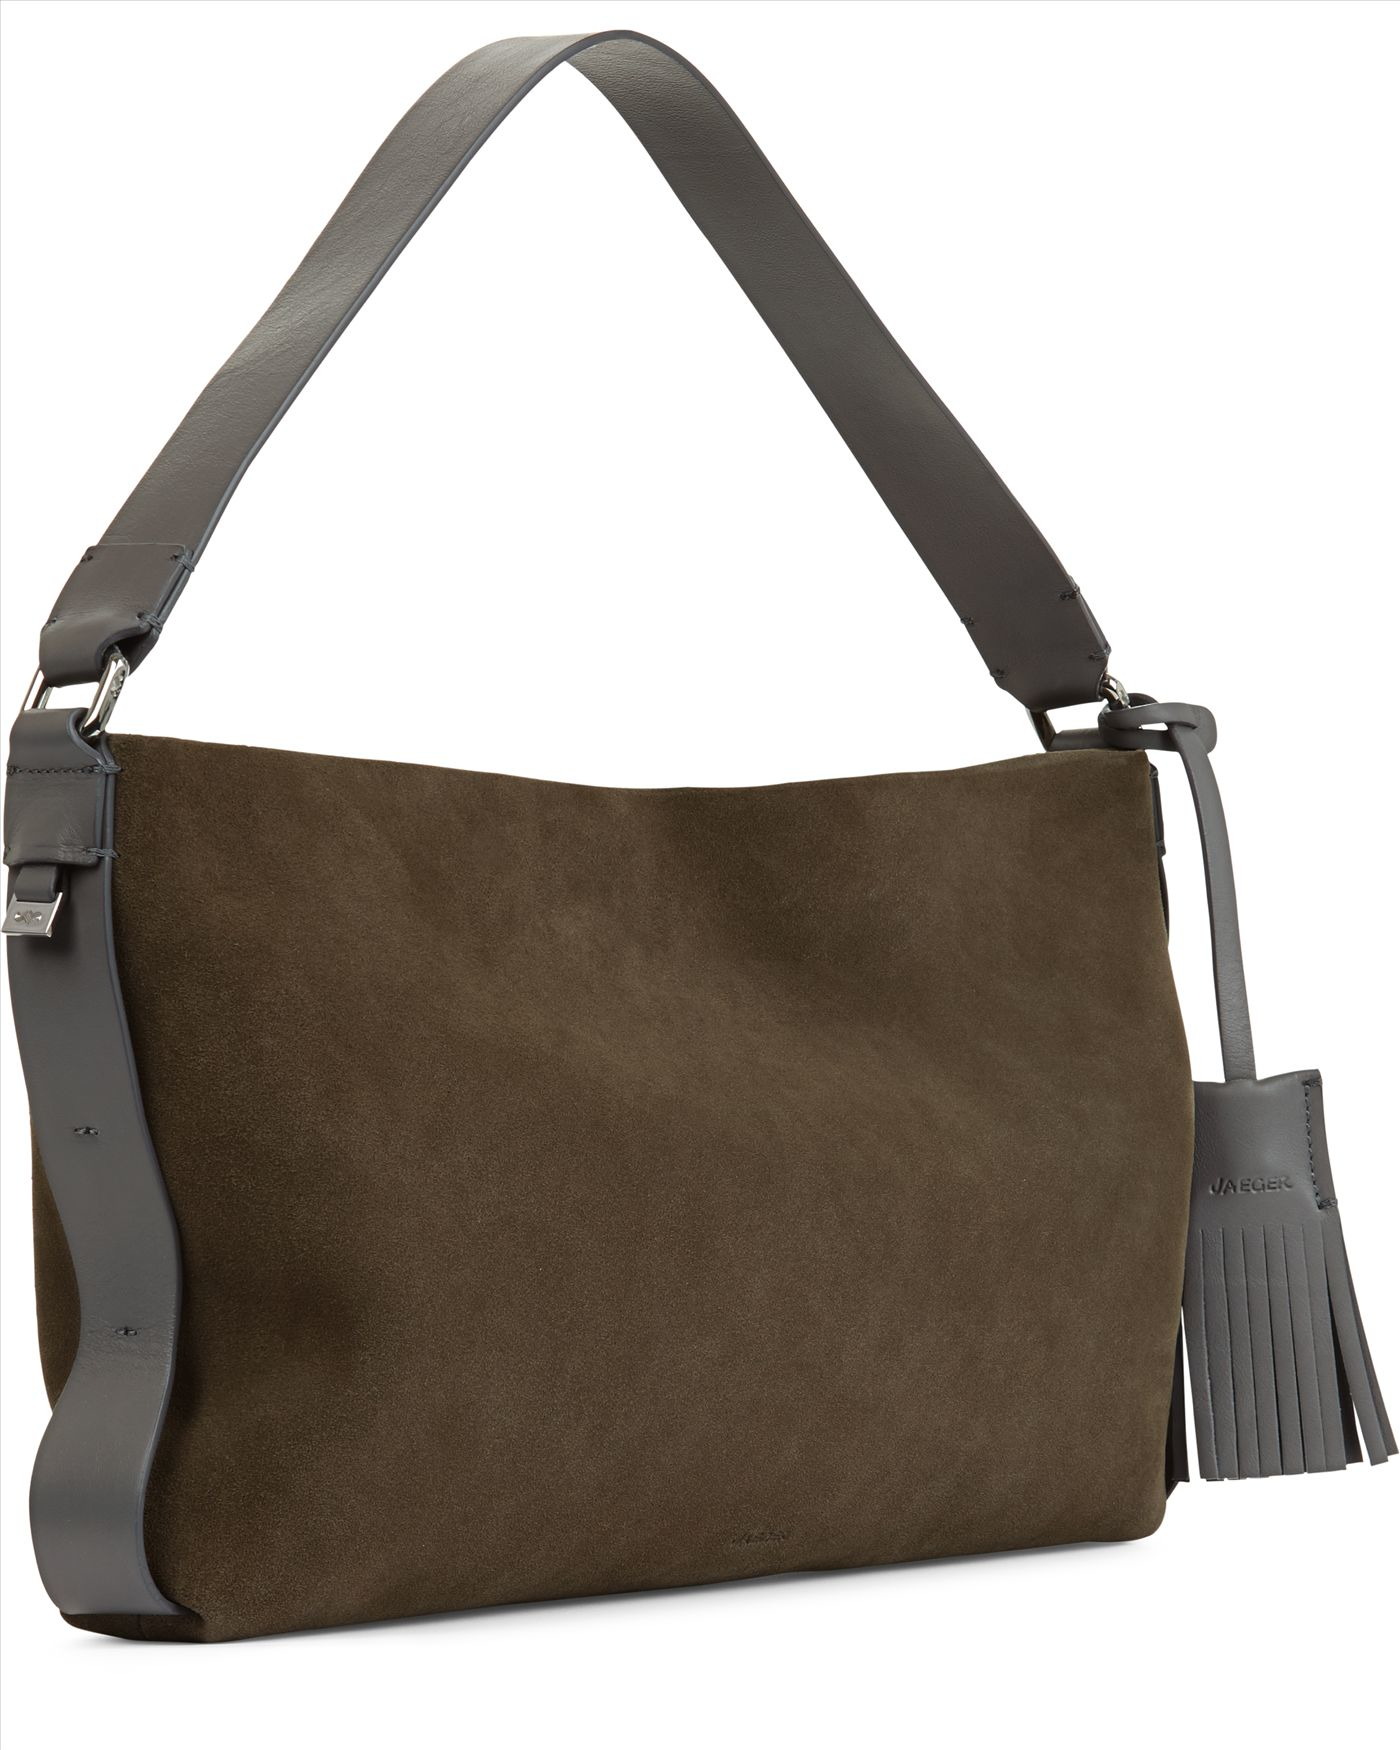 Lyst - Jaeger Soho Leather Shoulder Bag in Gray